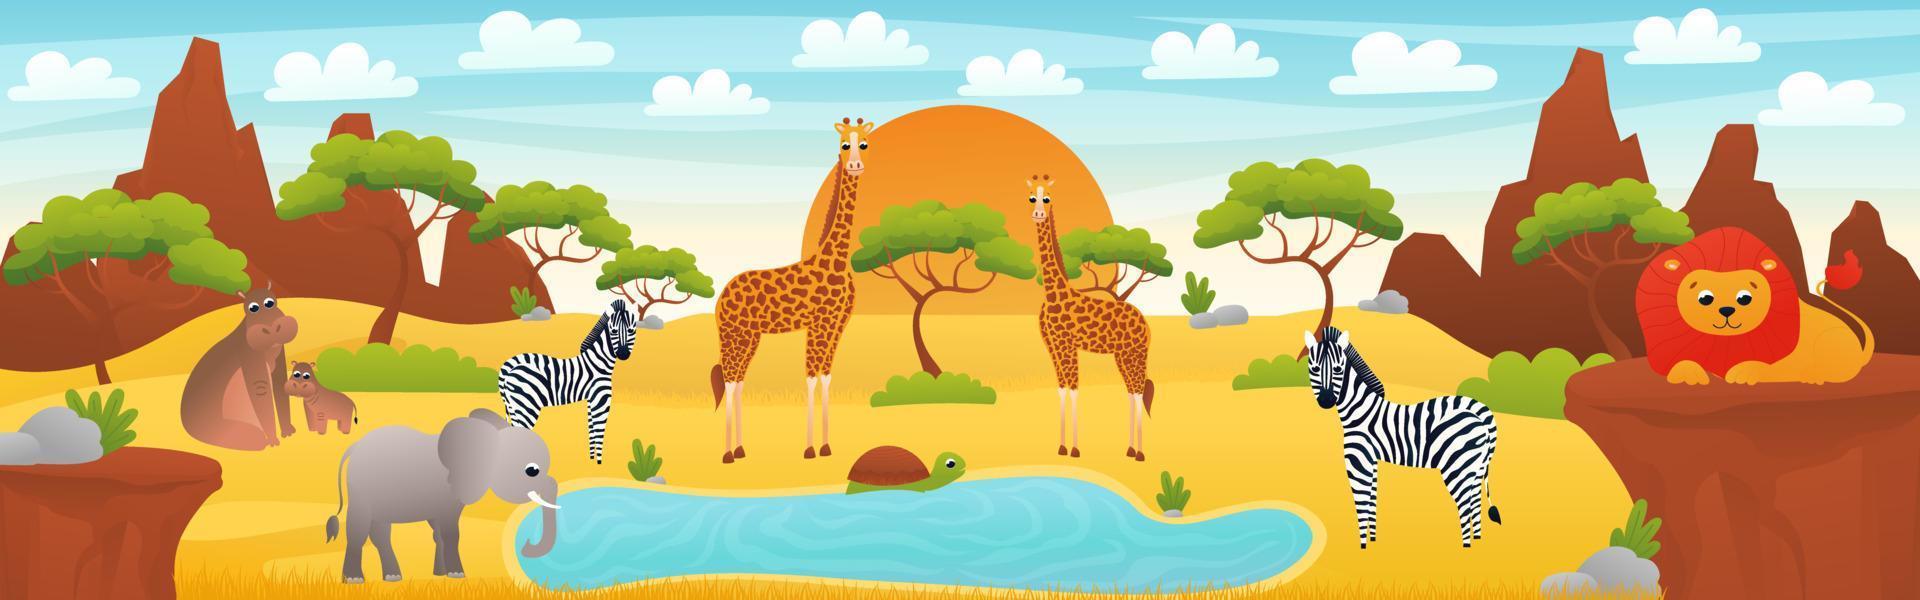 afrikanische landschaft mit niedlichen zeichentricktieren - elefant, zebra und löwe, webbanner mit savannenszene, afrikanische wüstenerkundung, zoo horizontales poster zum ausdrucken vektor